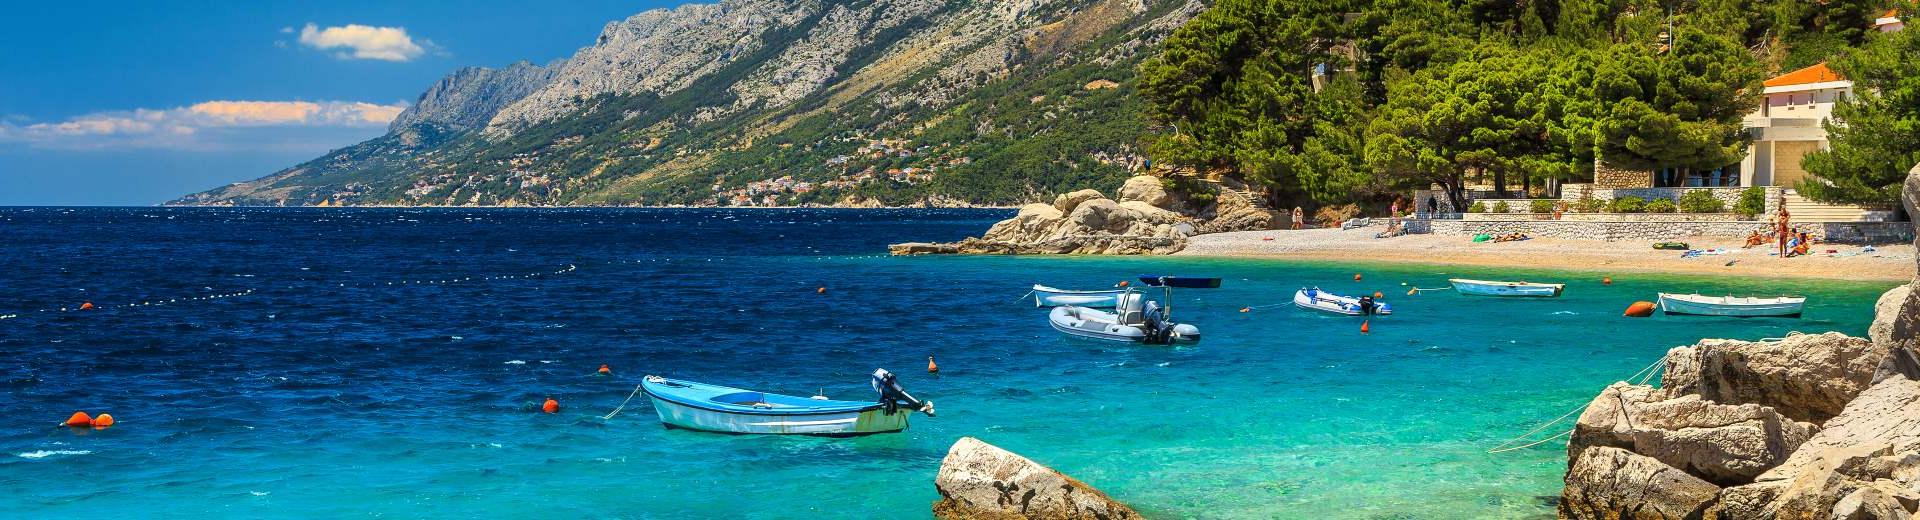 Alla ricerca di mare, sole, relax e cultura: Dalmazia vacanze è quello che fa per voi! - Casamundo